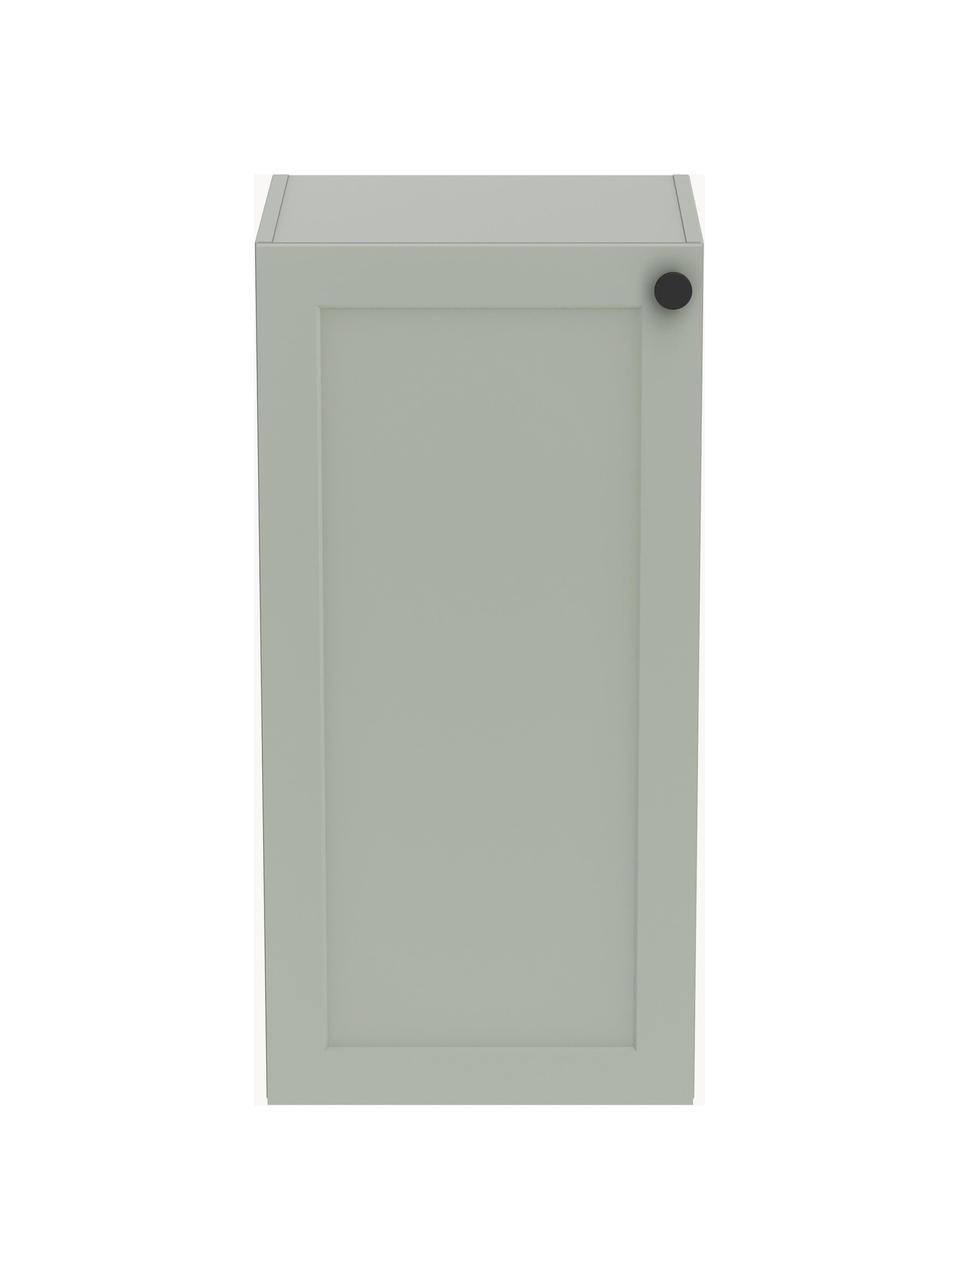 Wisząca szafka łazienkowa Rafaella, S 42 cm, Szałwiowy zielony, S 42 x W 85 cm